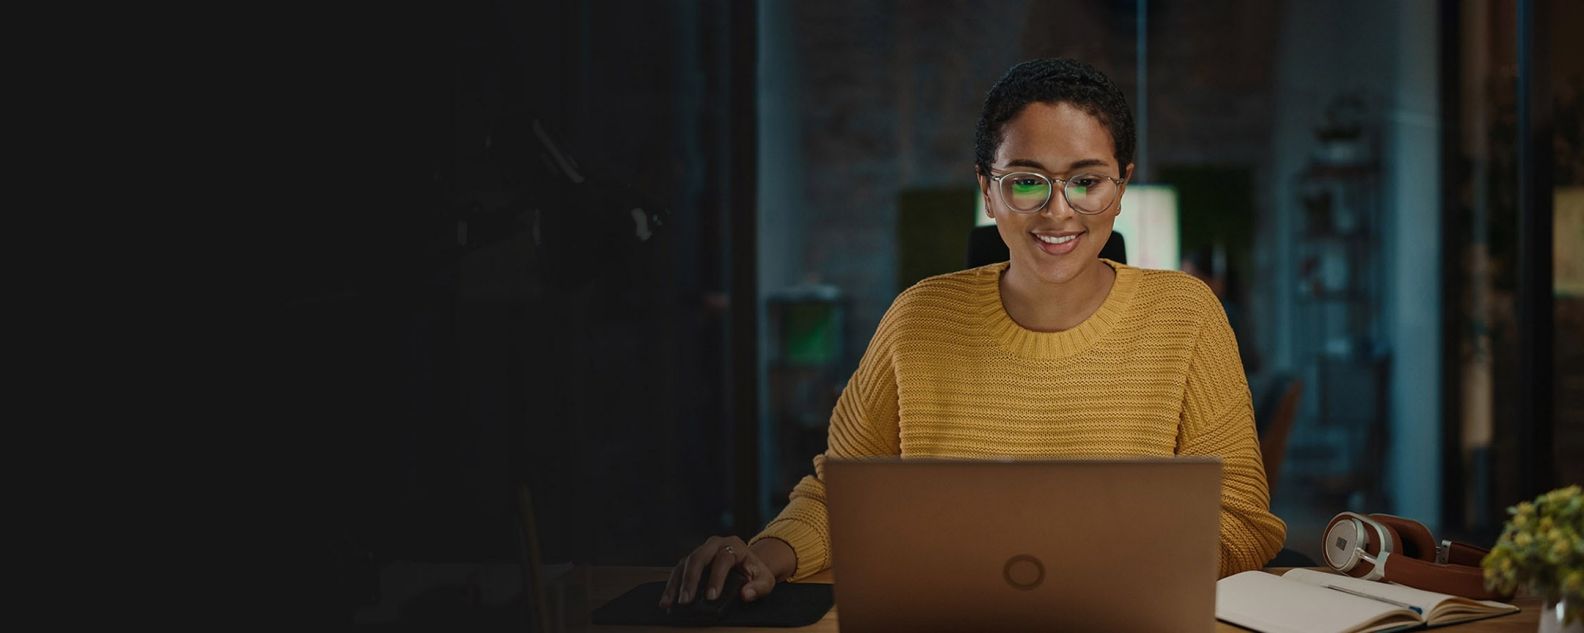 femme souriante utilisant un ordinateur portable